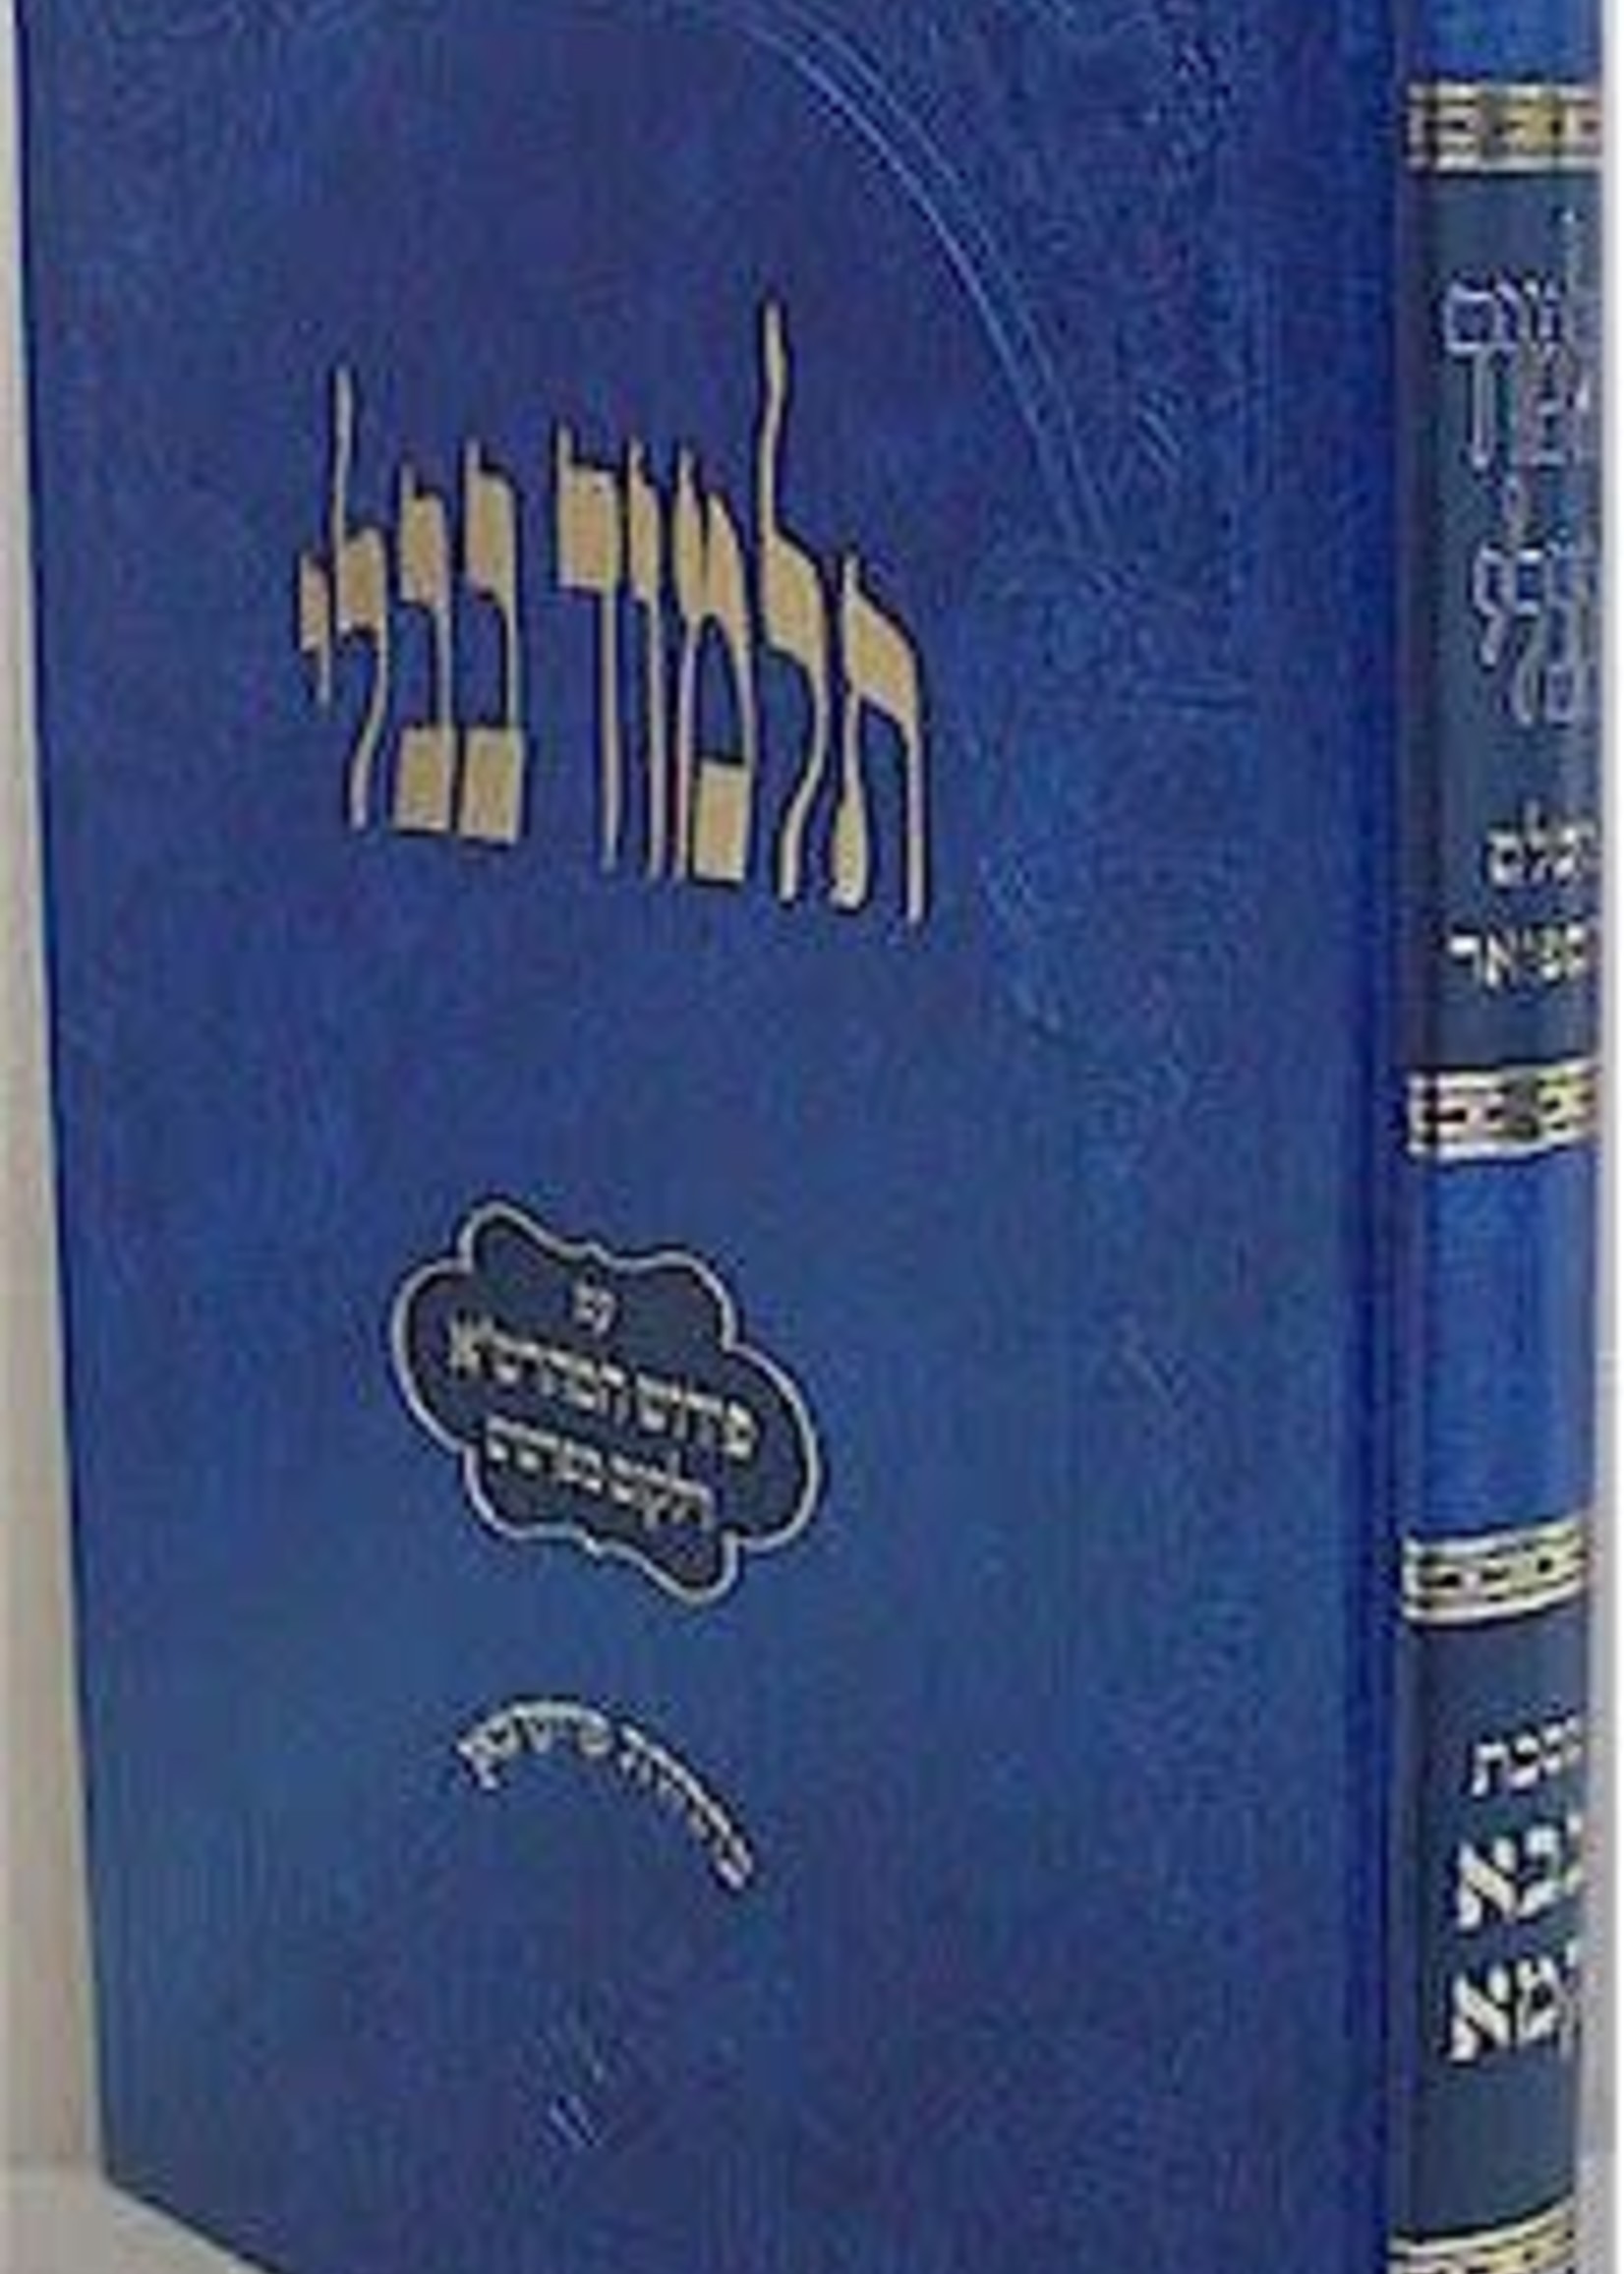 Talmud Bavli - Oz Vehadar Talmidim : Bava Kamma/  גמרא תלמוד בבלי עוז והדר תלמידים בבא קמא